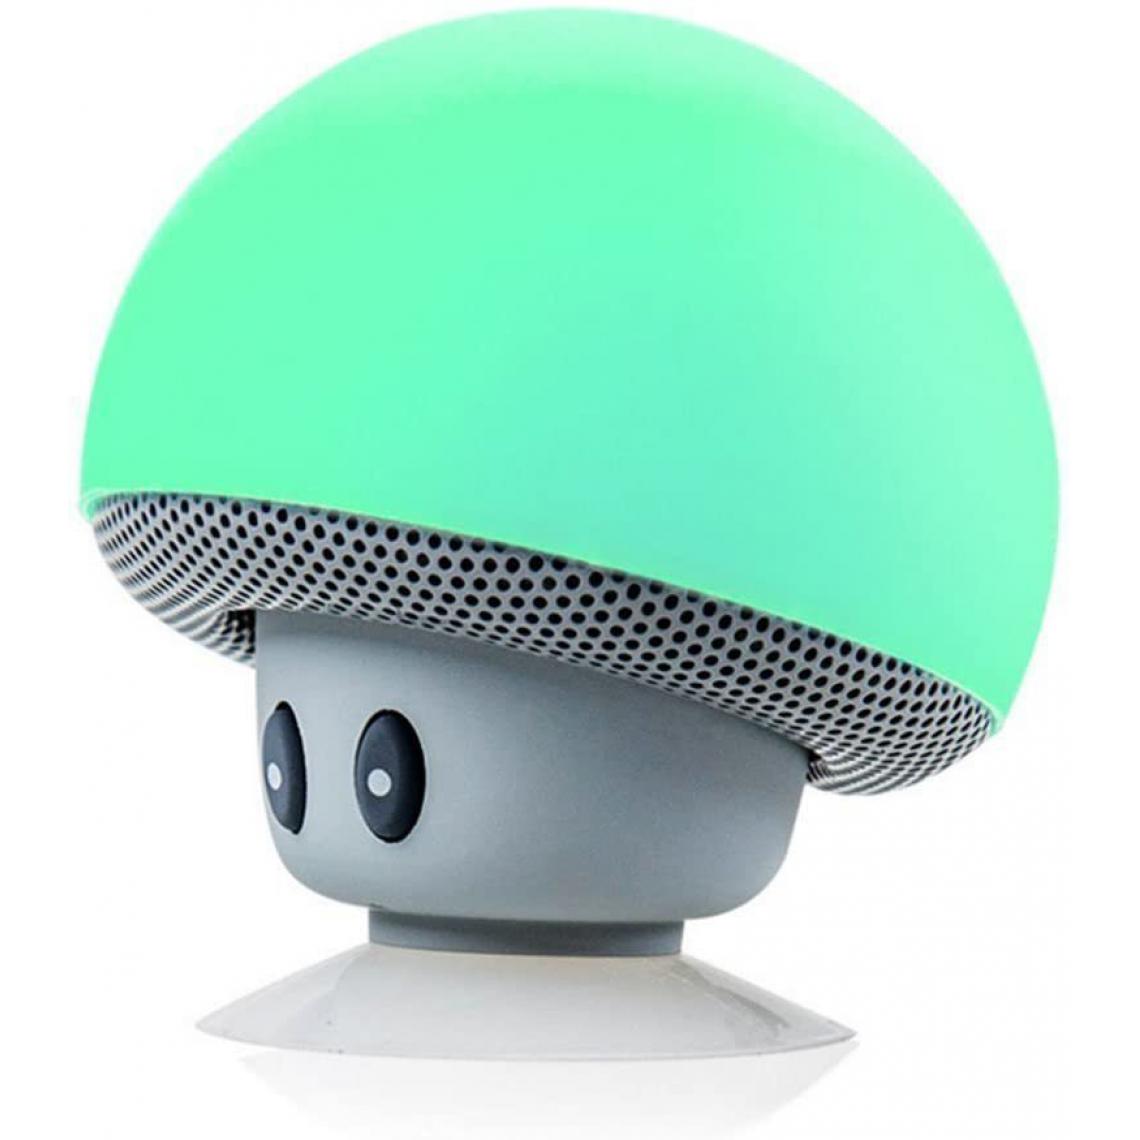 Chrono - Mini Mushroom Portable sans Fil Bluetooth V2.1 Haut-Parleur et Support de téléphone Portable avec Ventouse Compatible avec iPad, iPhone, téléphones Android, Ordinateur Portable(Turquoise) - Enceintes Hifi